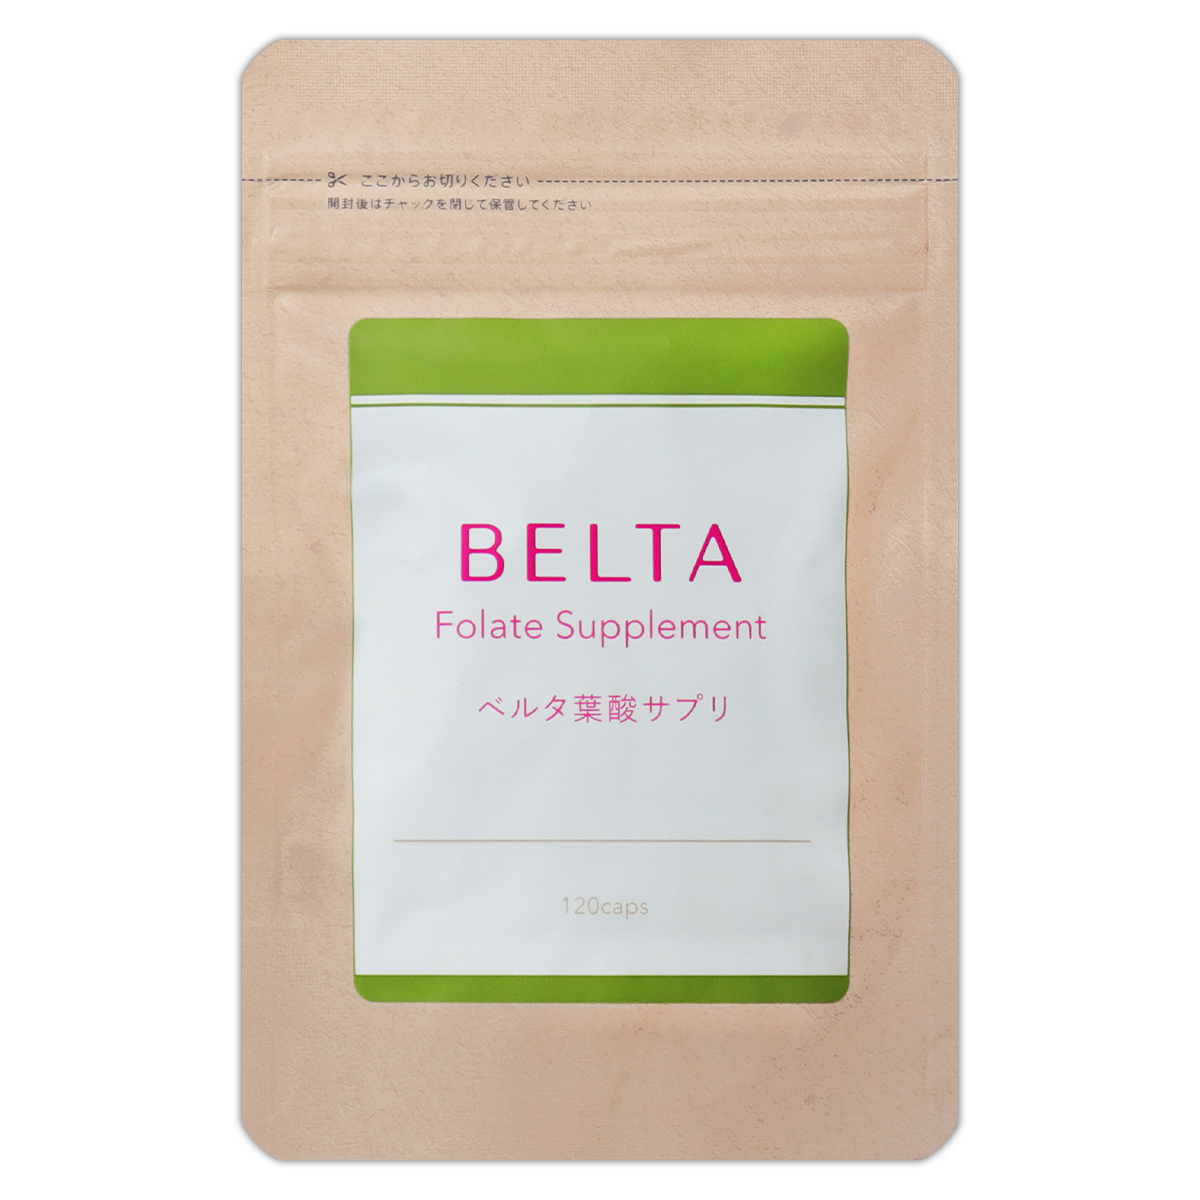 3袋セット 】 ベルタ葉酸サプリ 120粒 ( 約1ヵ月分 ) ベルタ BELTA